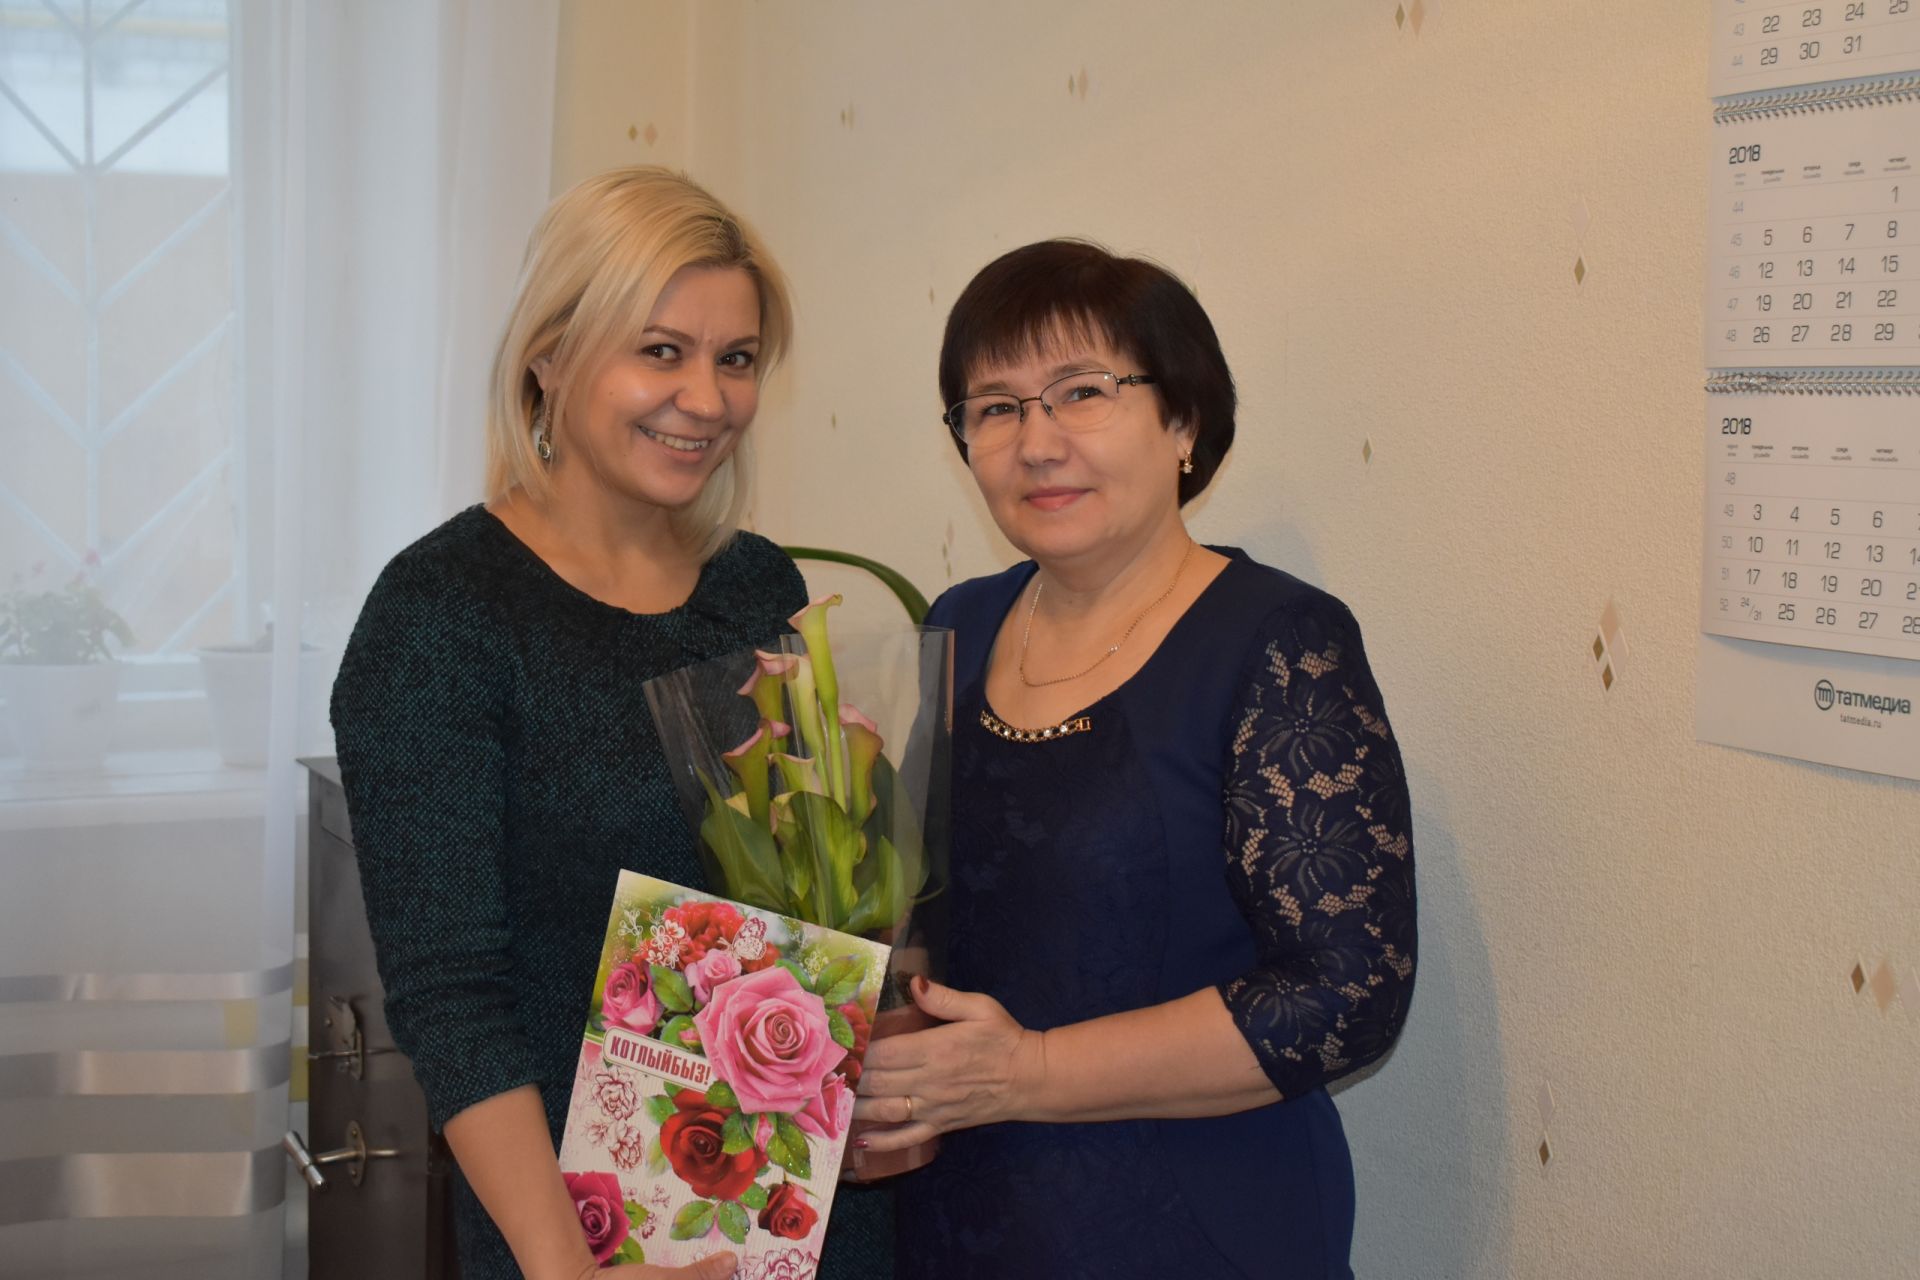 Весь наш дружный коллектив поздравляет Анну Дмитриевну ИЛЬИНУ с днем рождения!